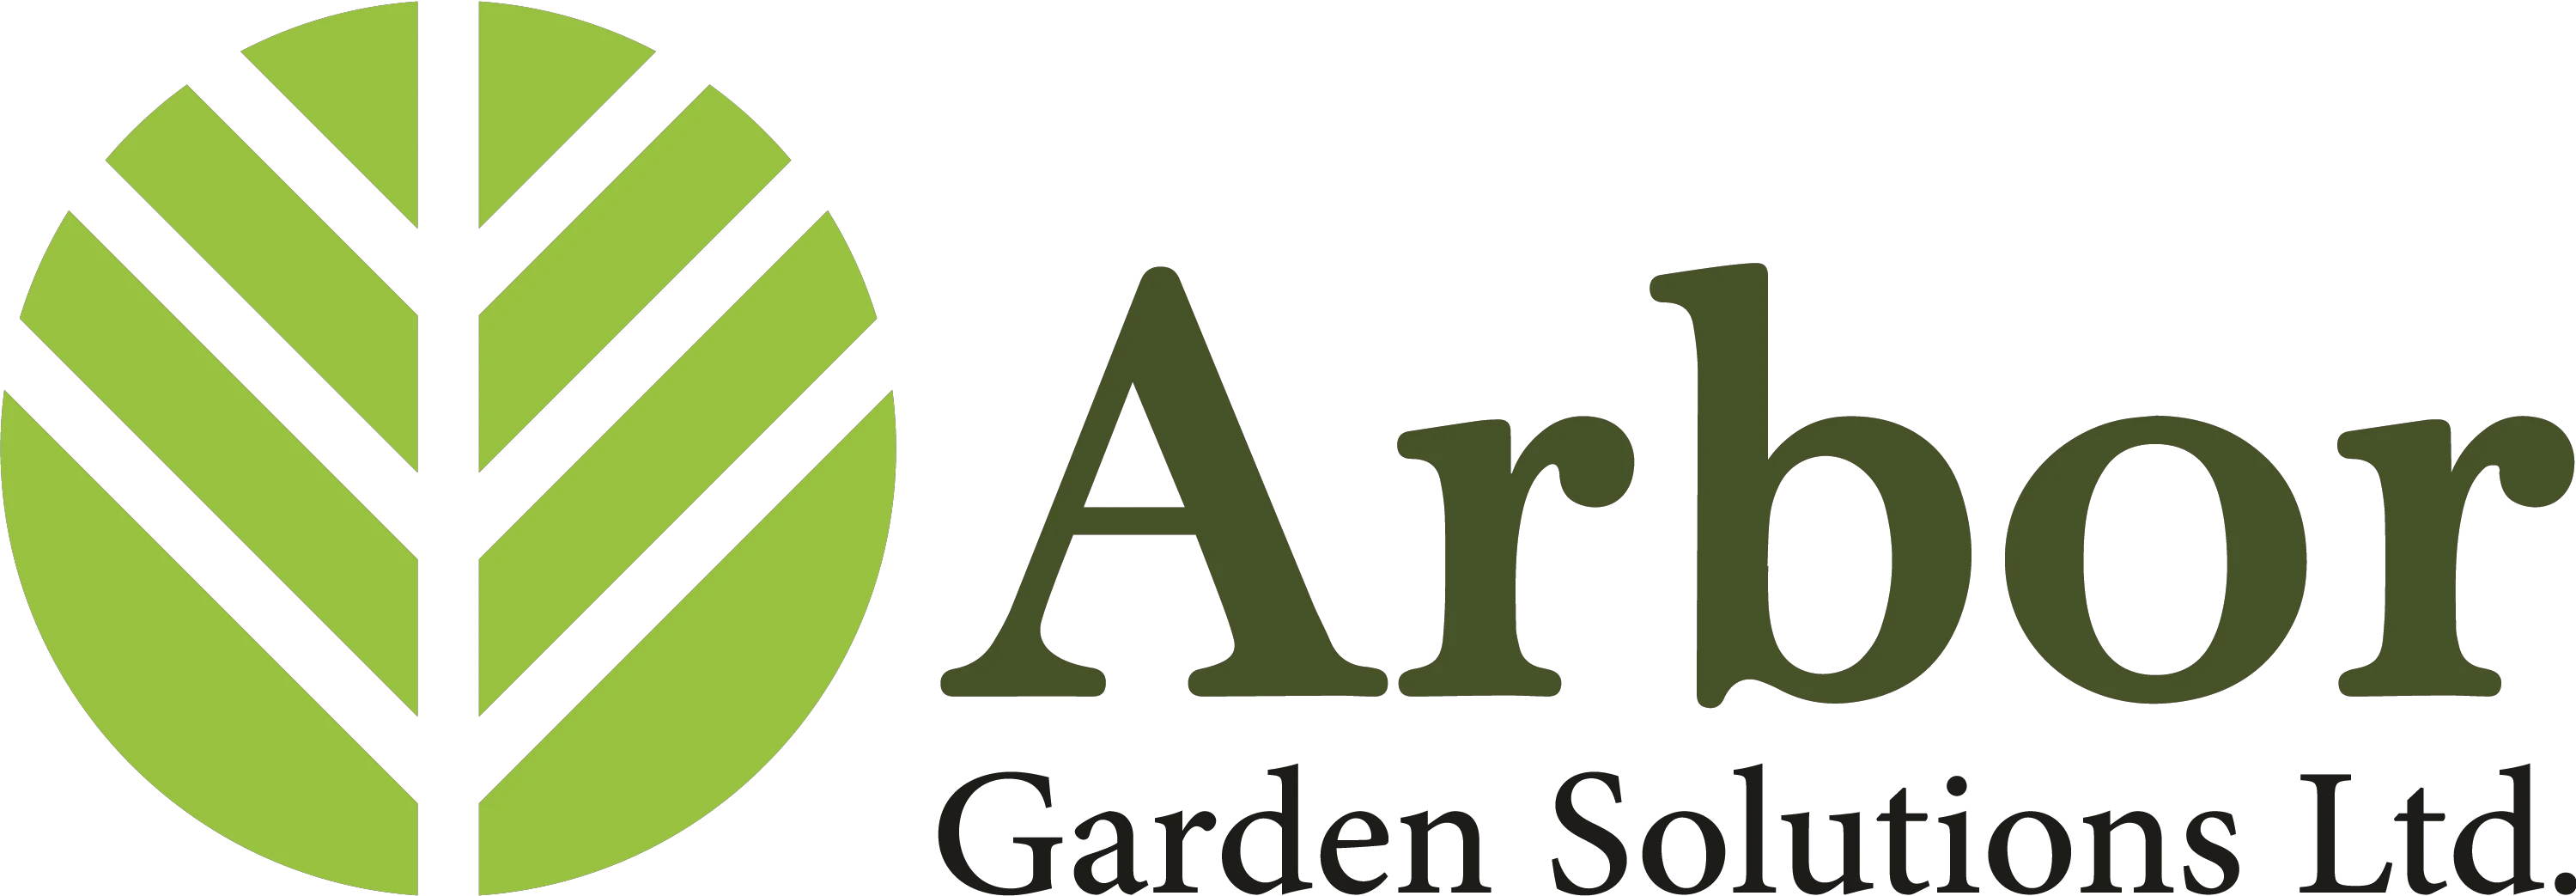 Arbor Garden Solutions kupony 